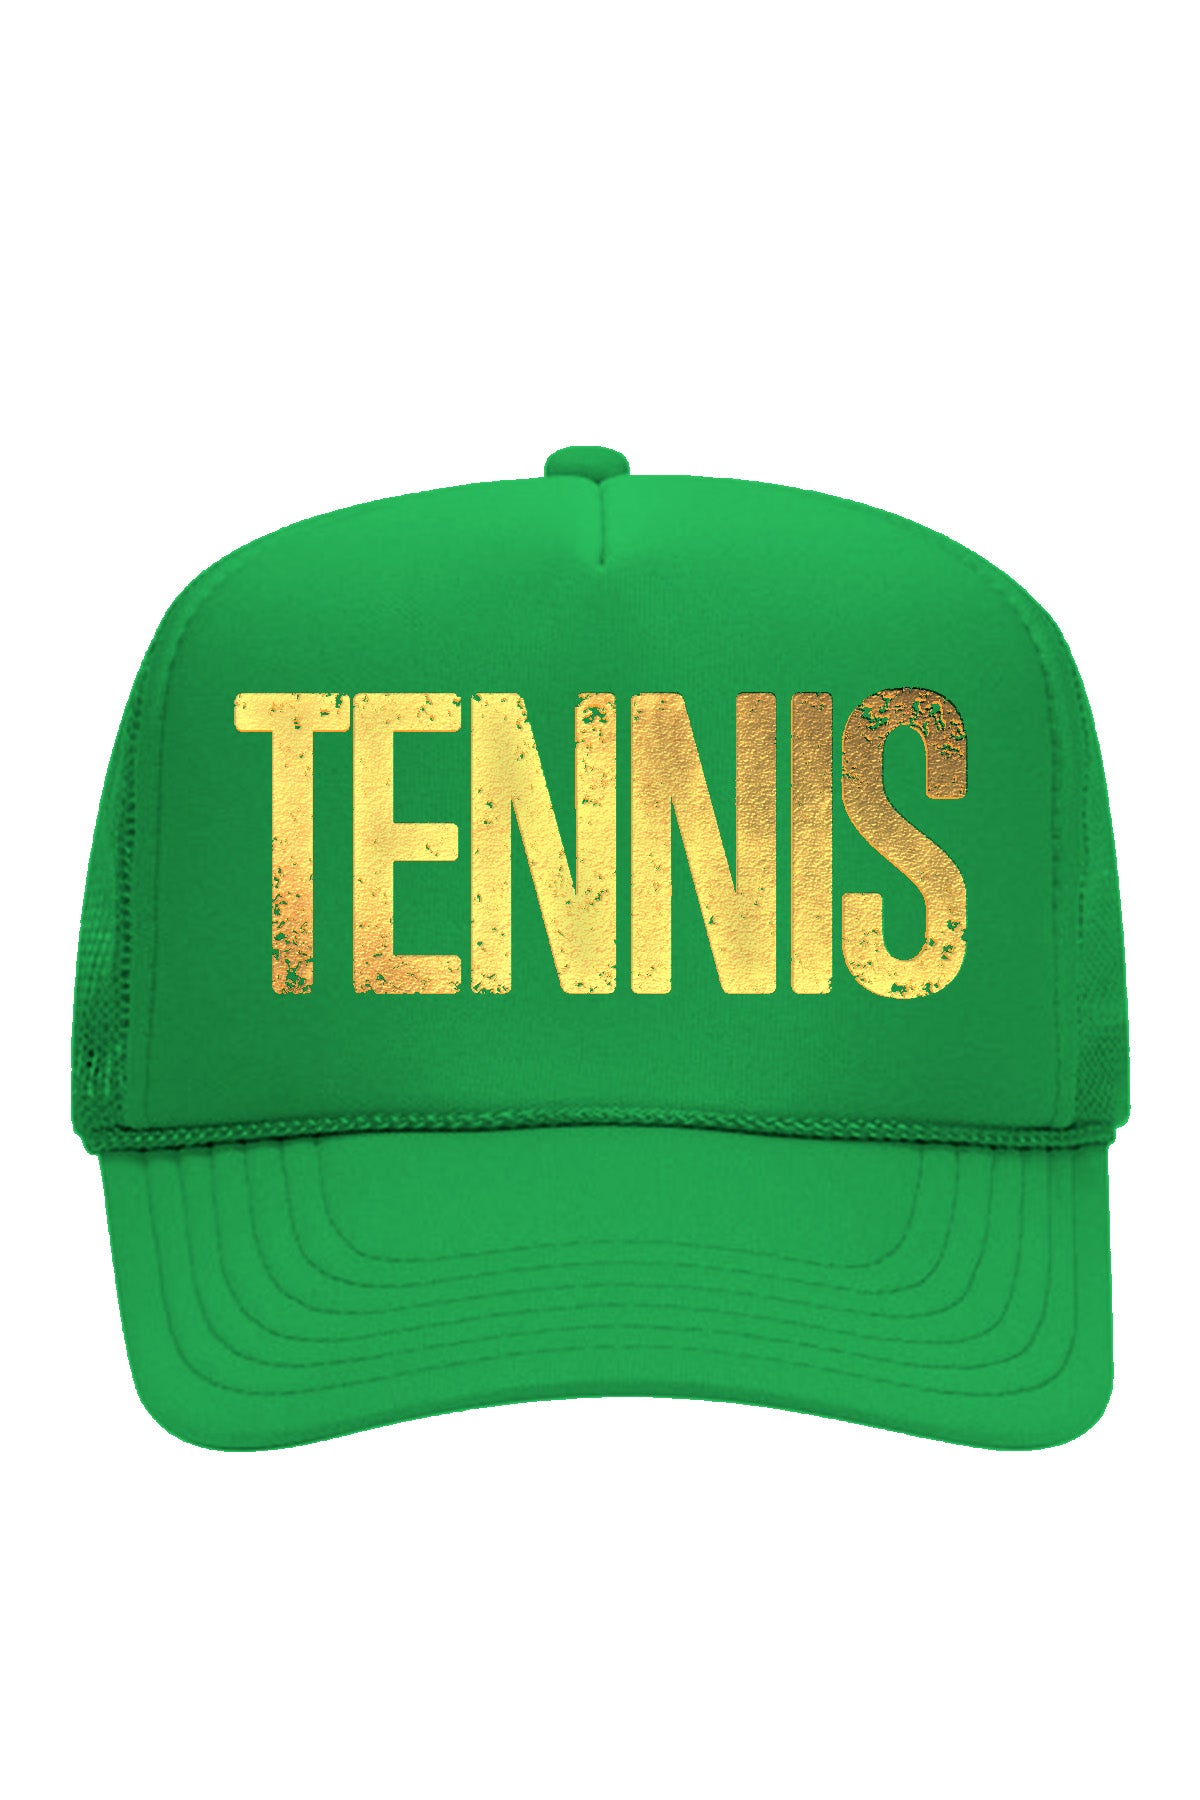 TENNIS IS GOLDEN Trucker Hat